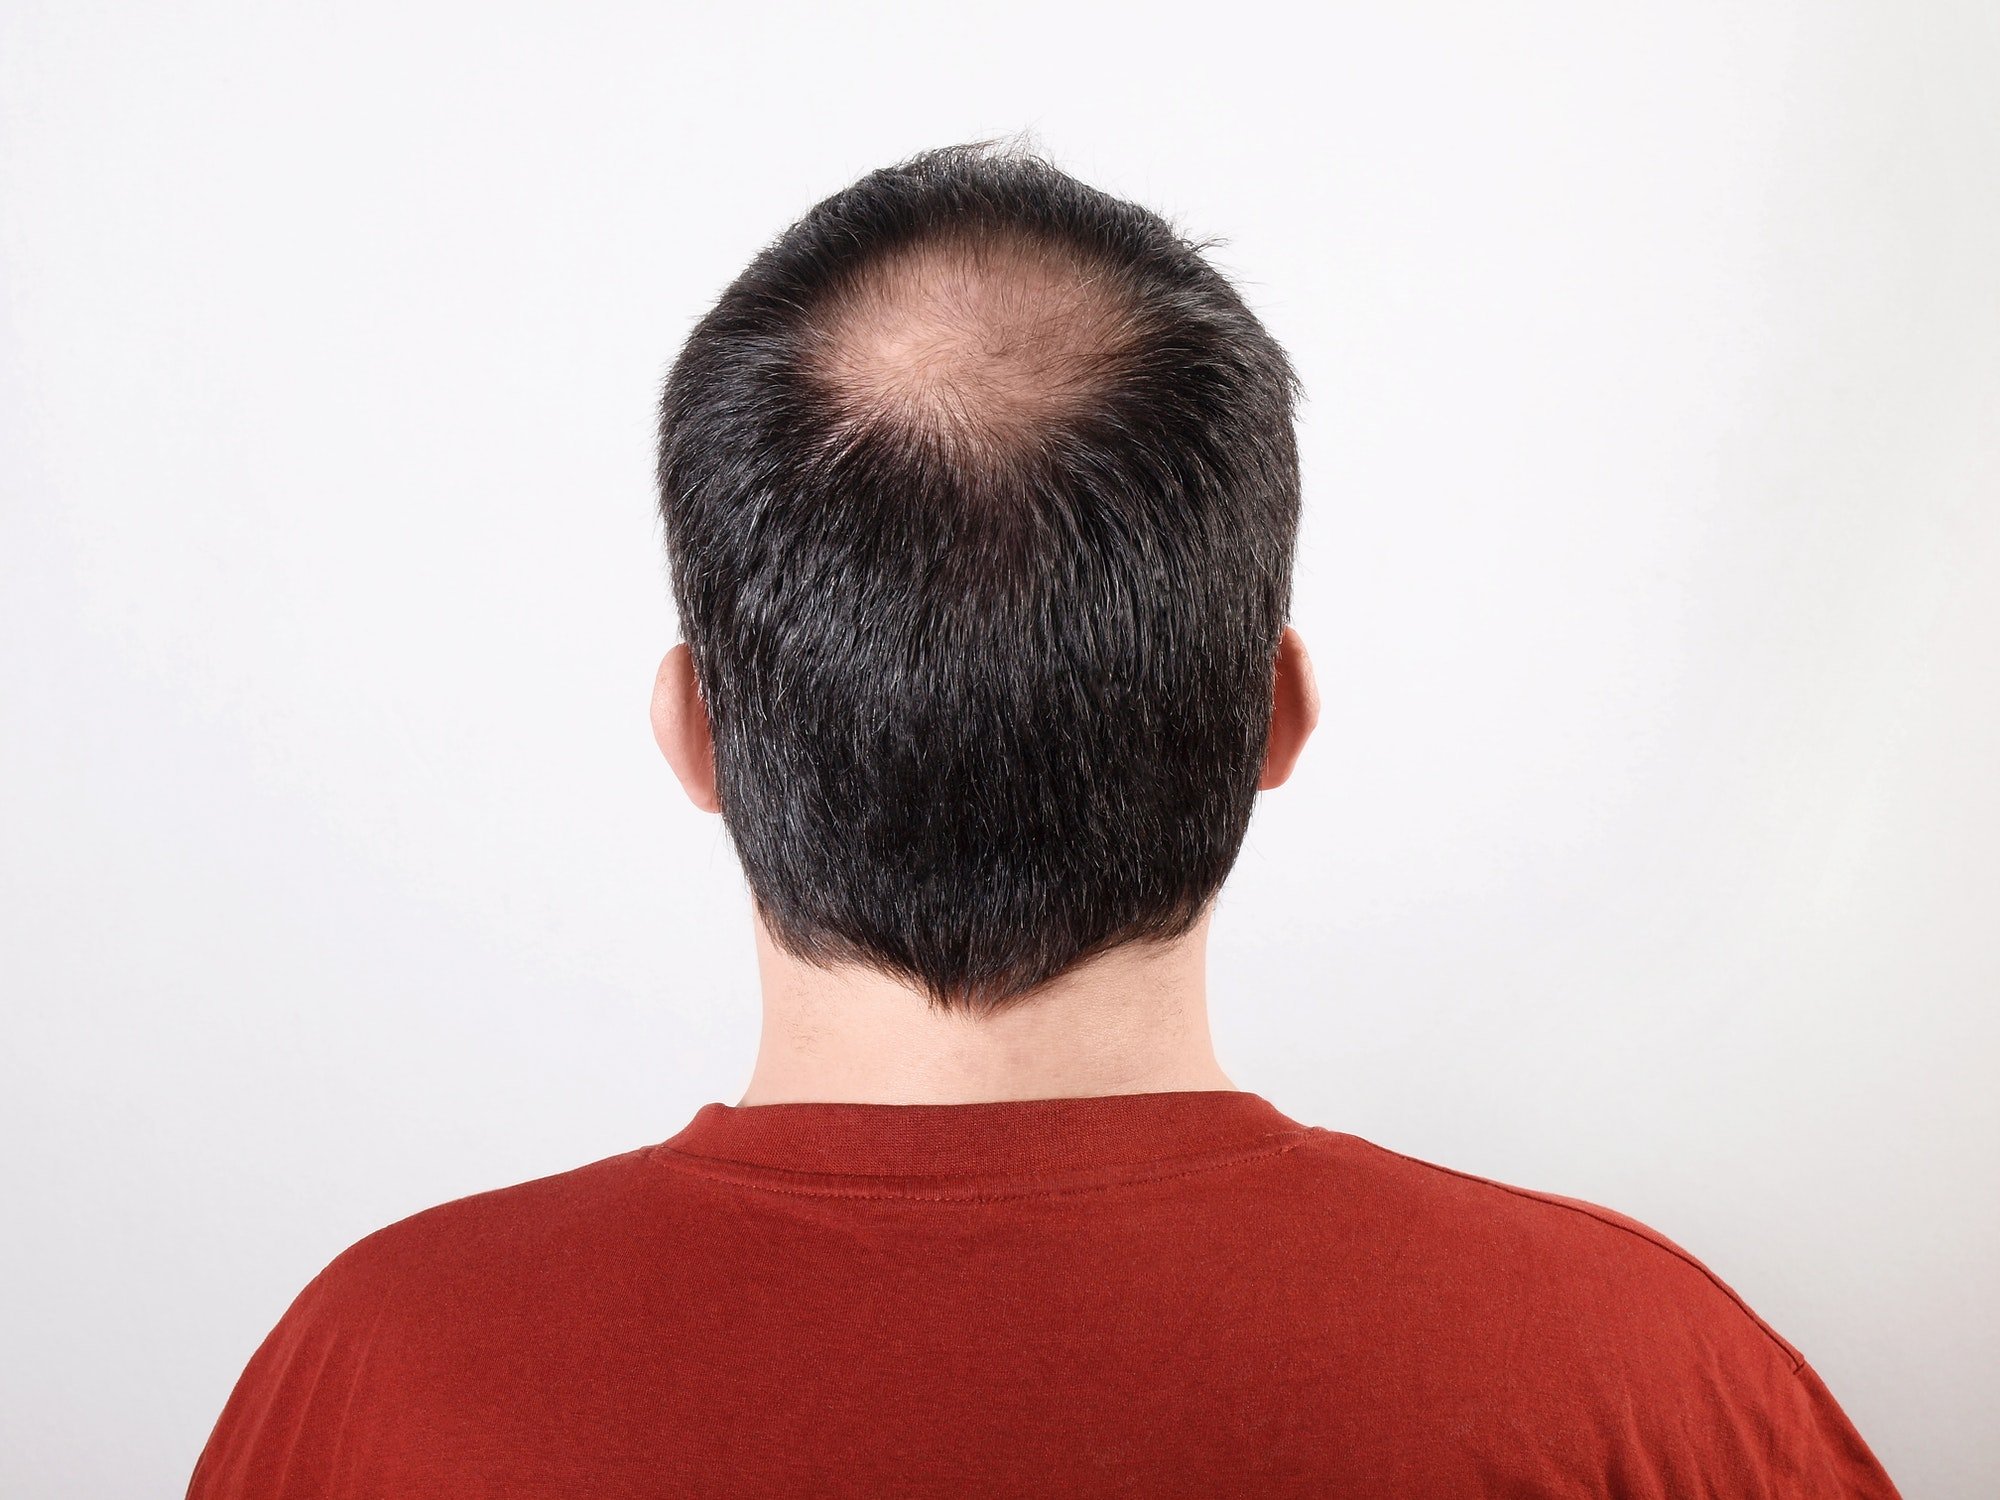 La perte de cheveux - qui aide vraiment. Homme aux cheveux clairsemés ou souffrant d'alopécie ou de chute de cheveux